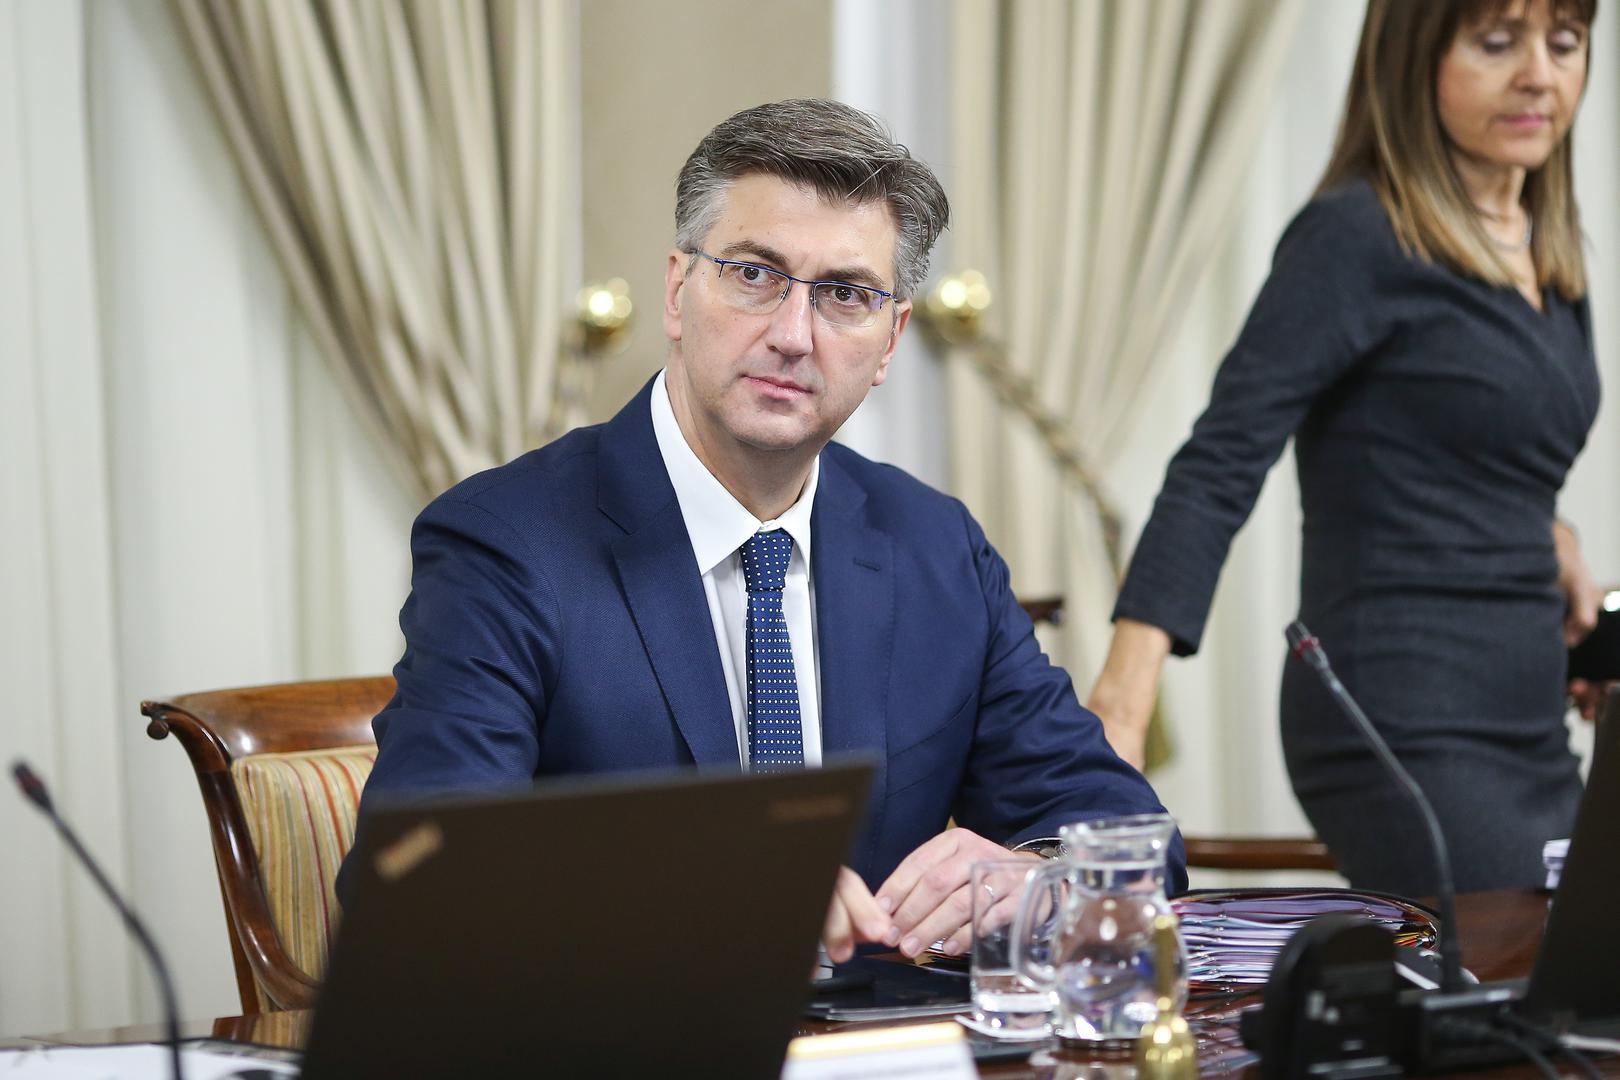 Premijer Andrej Plenković: Predsjednica kvalitetno i angažirano obavlja svoj posao, ima još godinu dana da provede svoj program